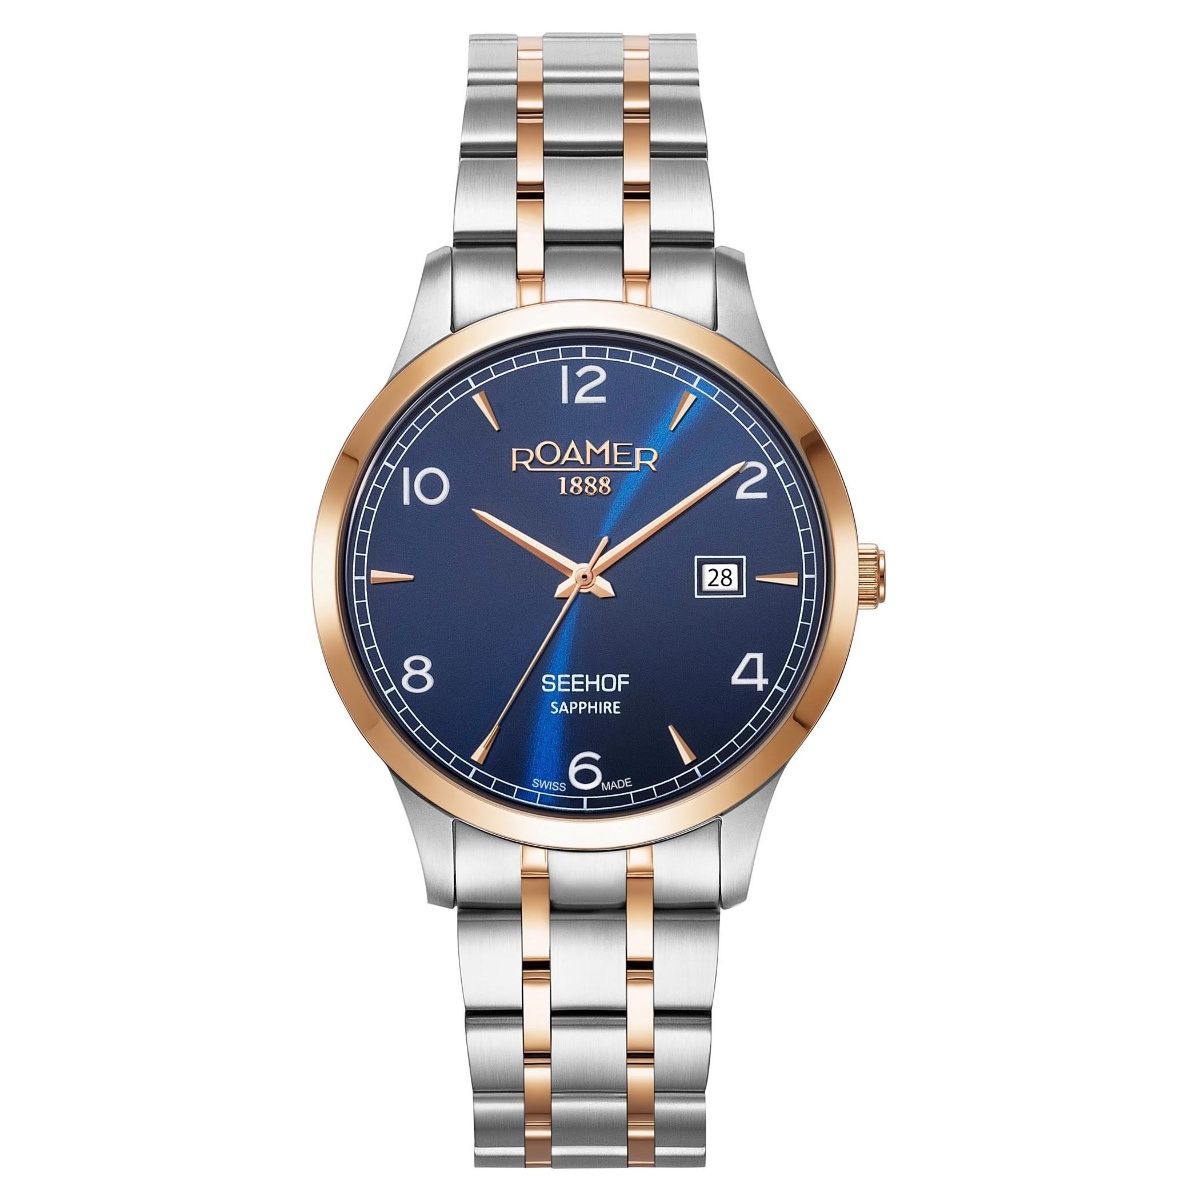 Gents 1950s Roamer Wrist Watch | 889235 | Sellingantiques.co.uk